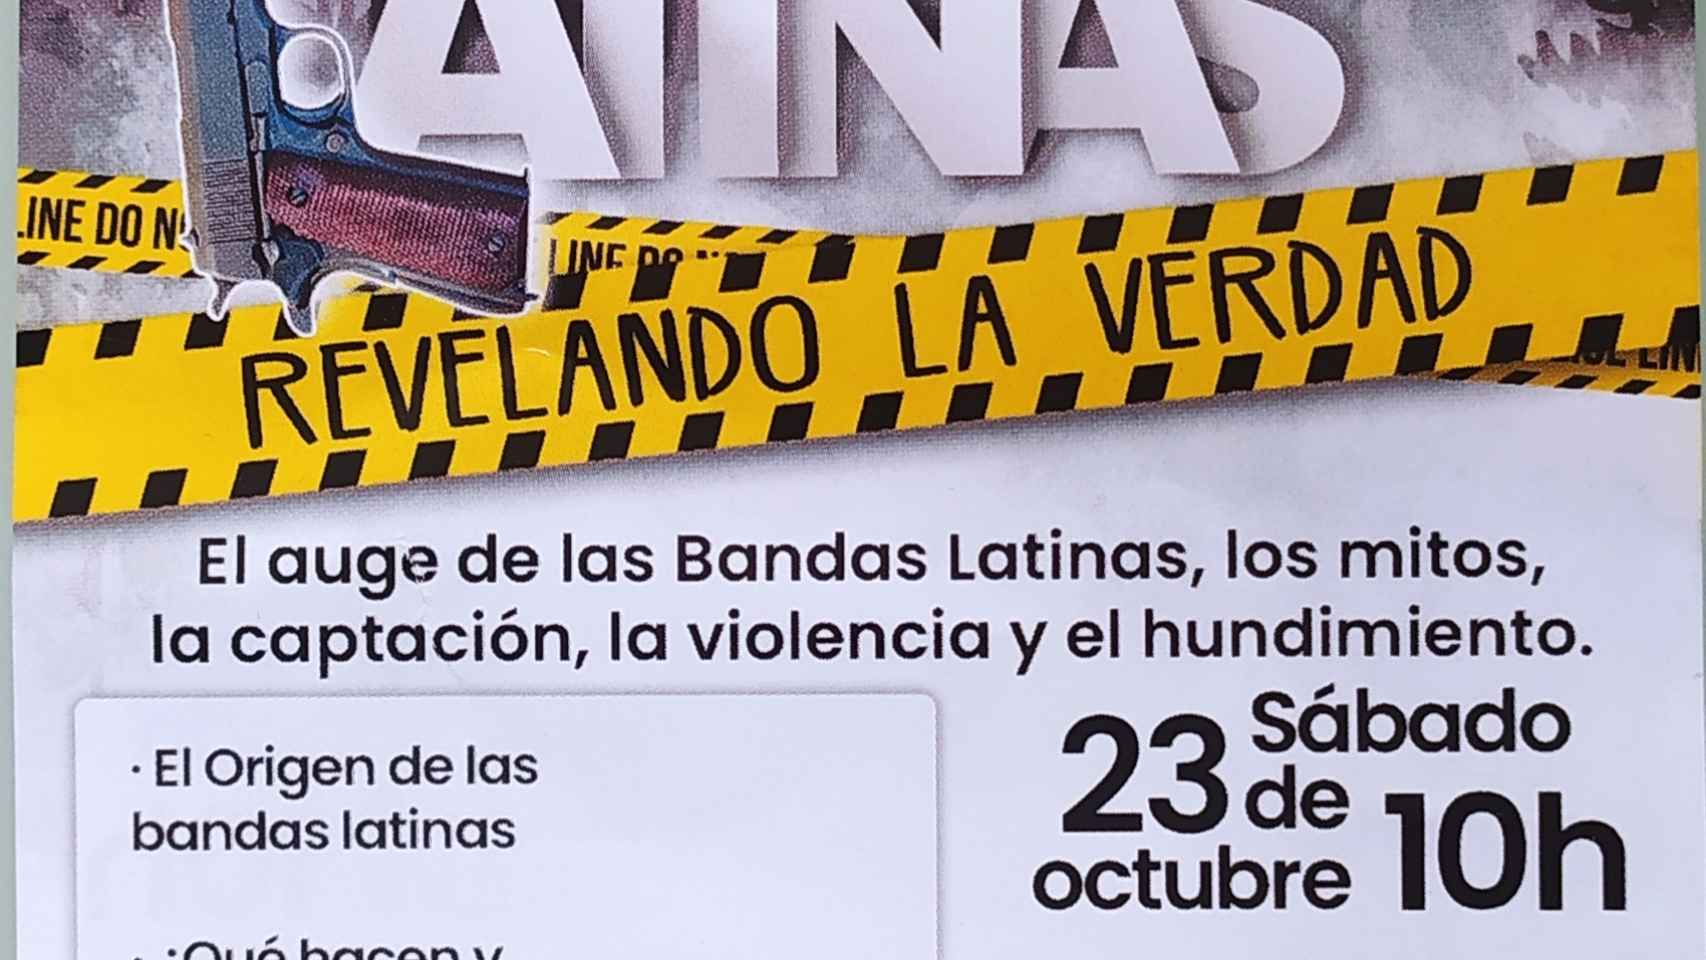 Panfleto informativo del Centro de Ayuda Cristiano sobre bandas latinas.